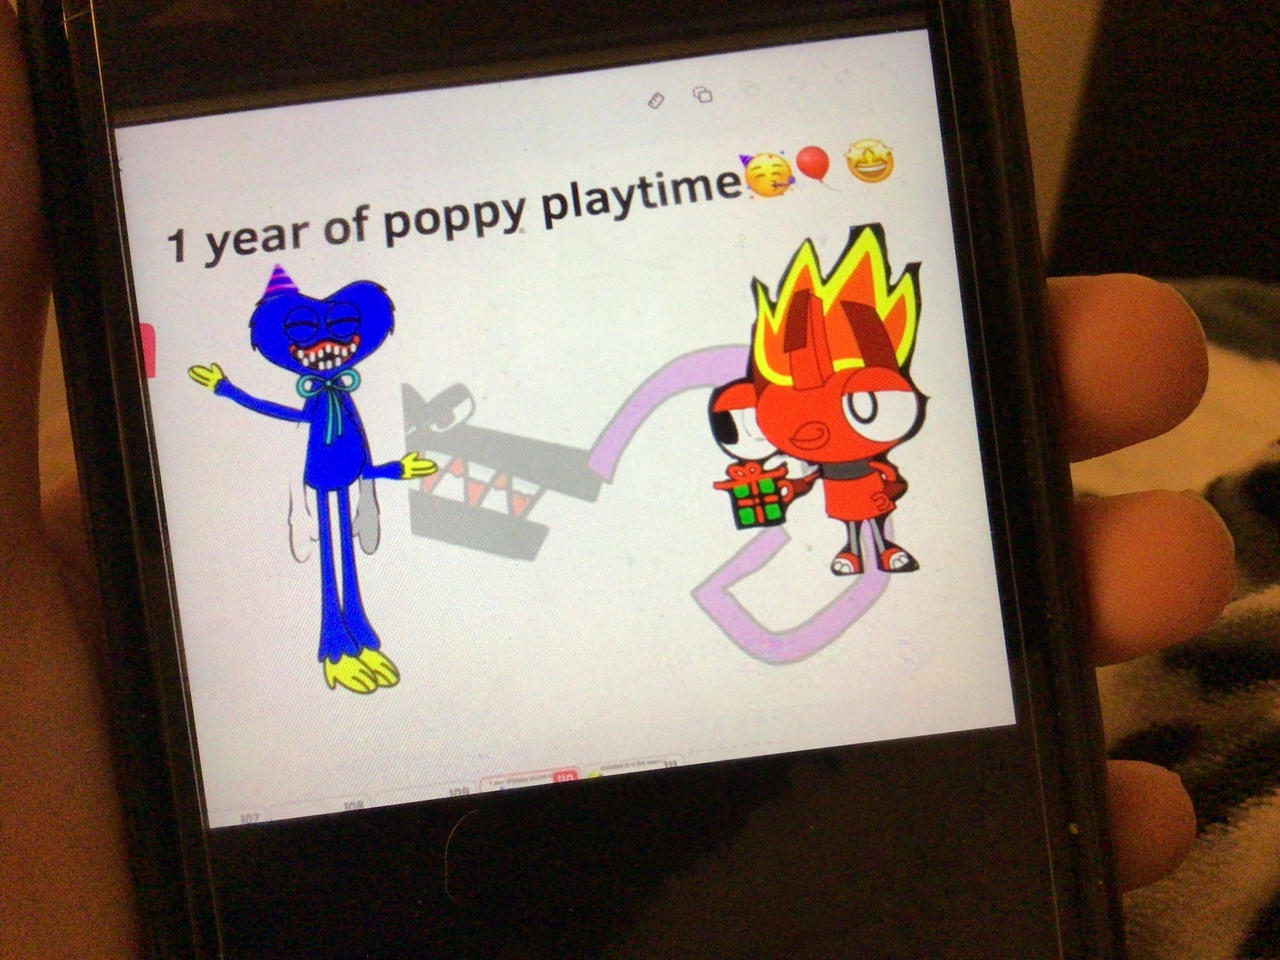 Poppy Playtime (Chapter 1) by BEBA-780 on DeviantArt